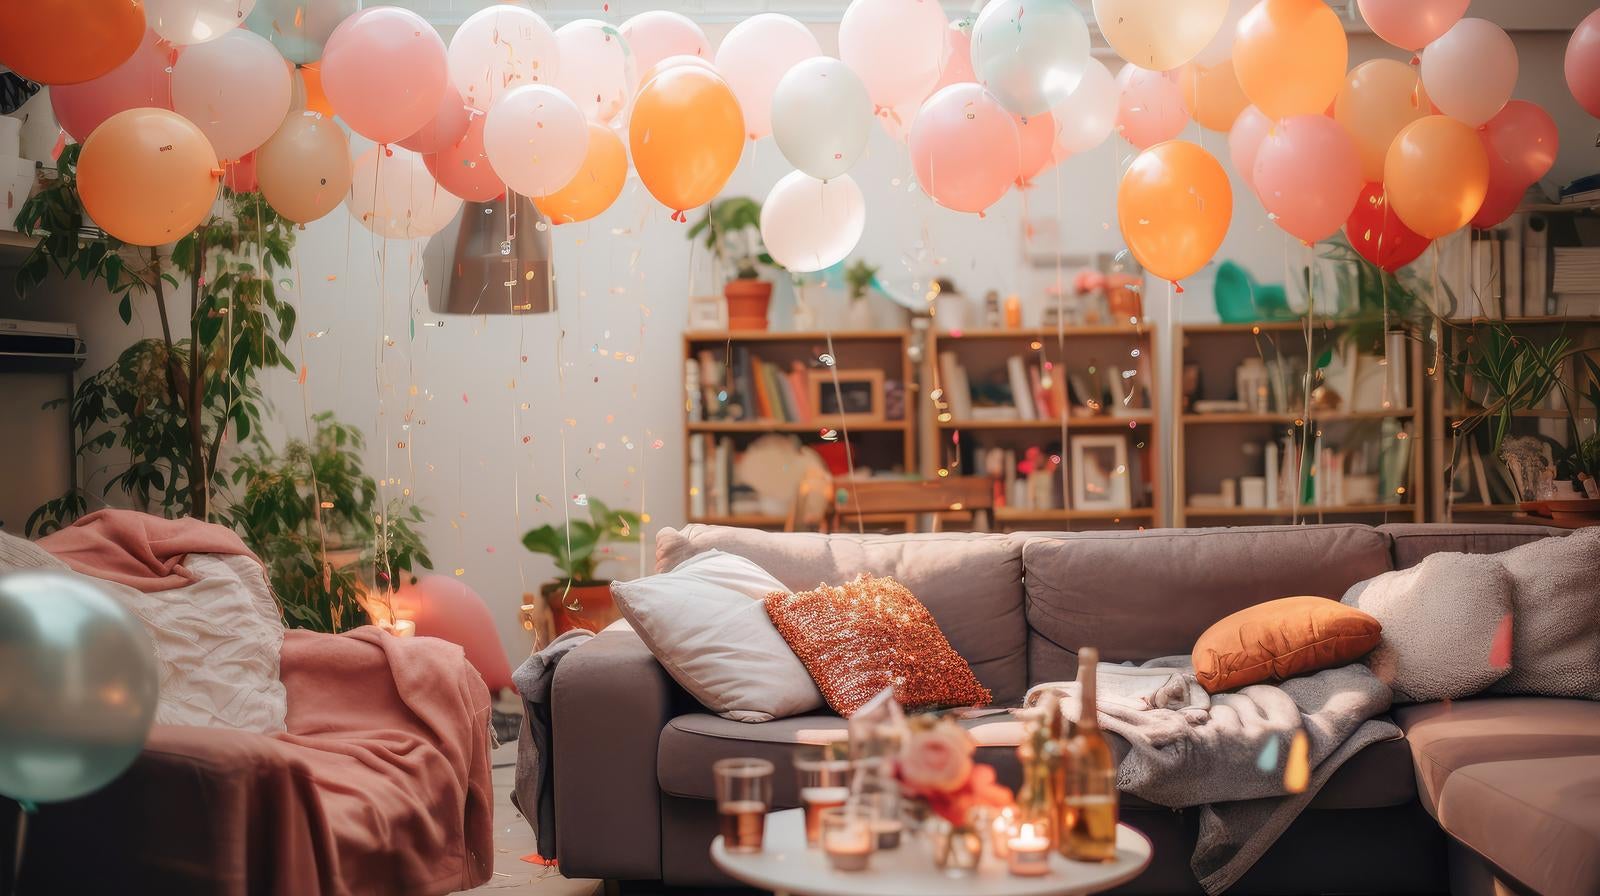 「ホームパーティが開催されたソファーのある部屋」の写真